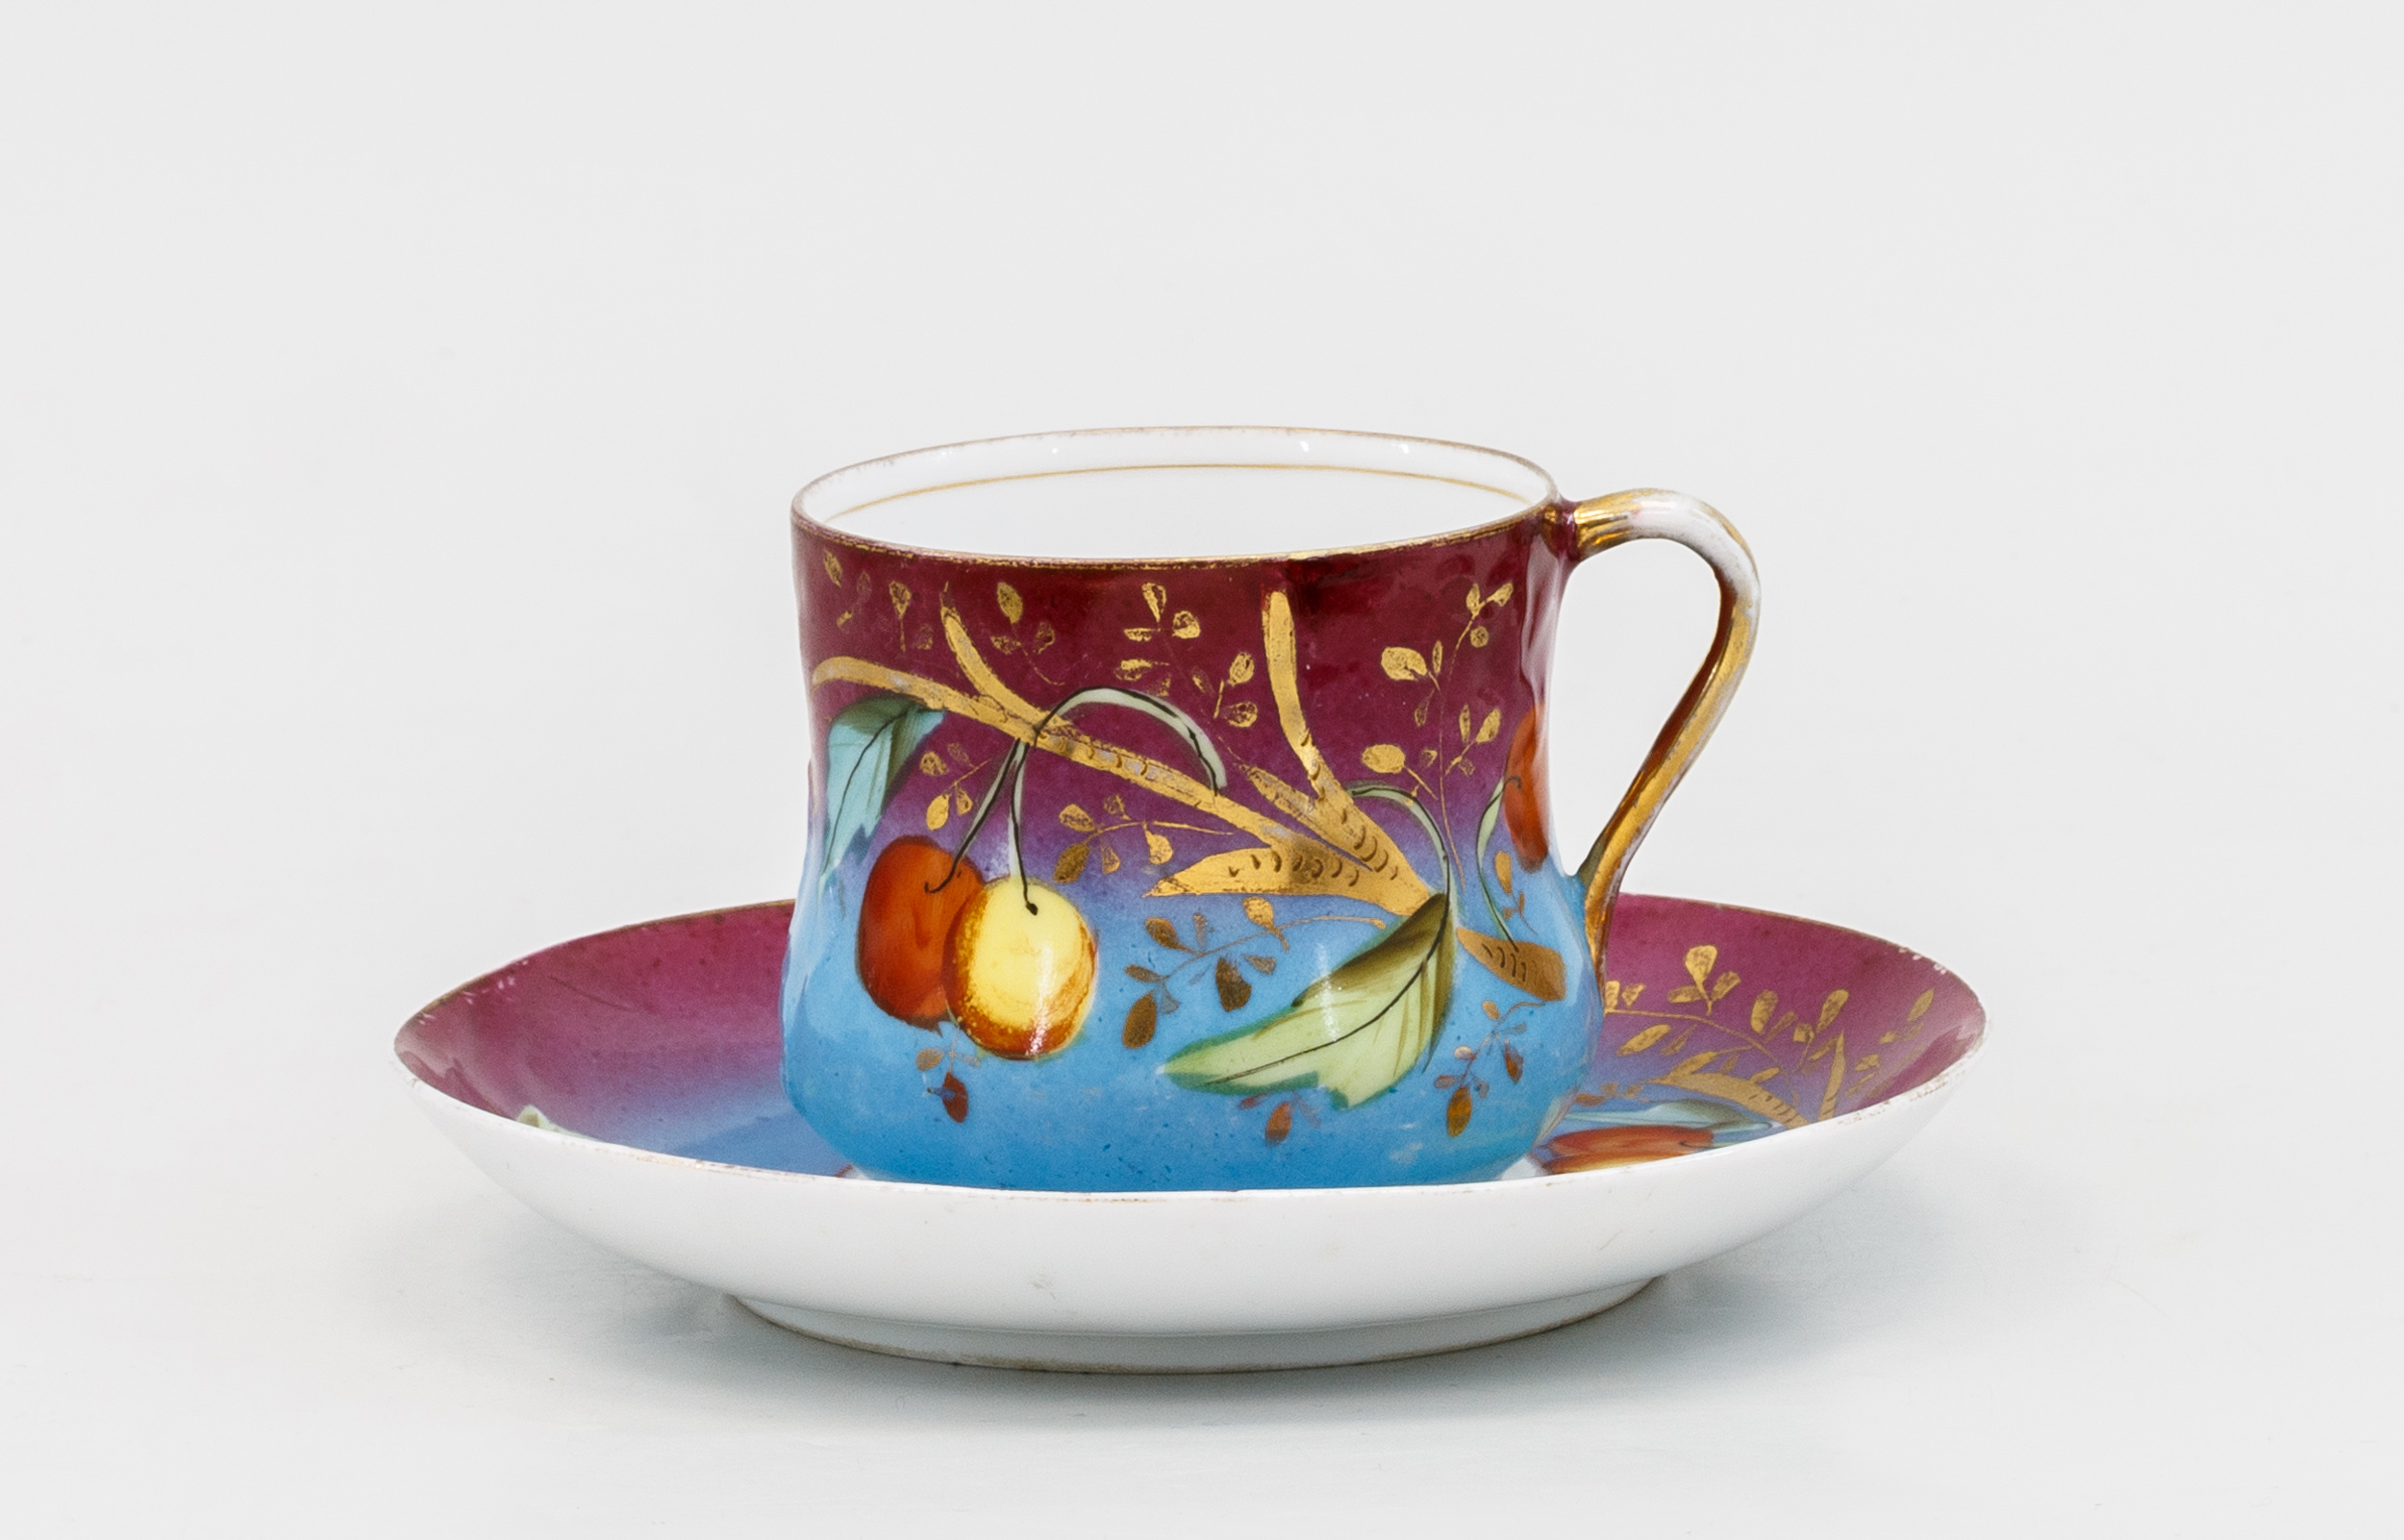 Чайная пара с росписью в малиново-синих тонах и с изображением ягод